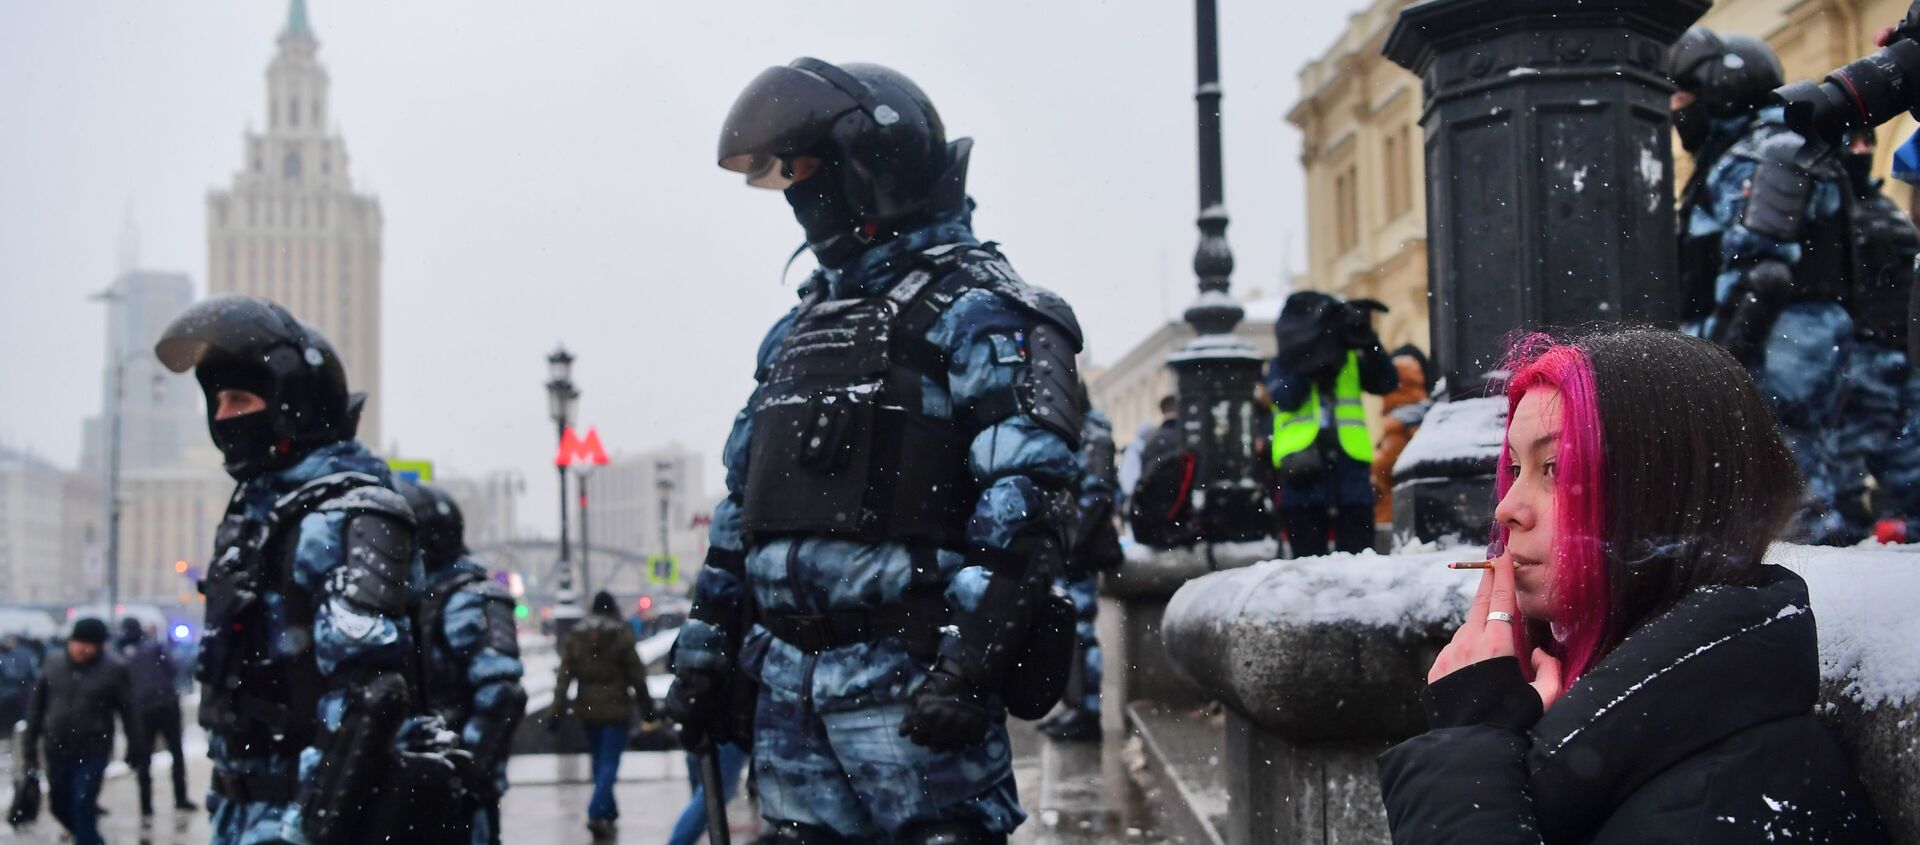 Agentes de seguridad rusos durante las protestas no autorizadas celebradas el 31 de enero en Rusia - Sputnik Mundo, 1920, 01.02.2021